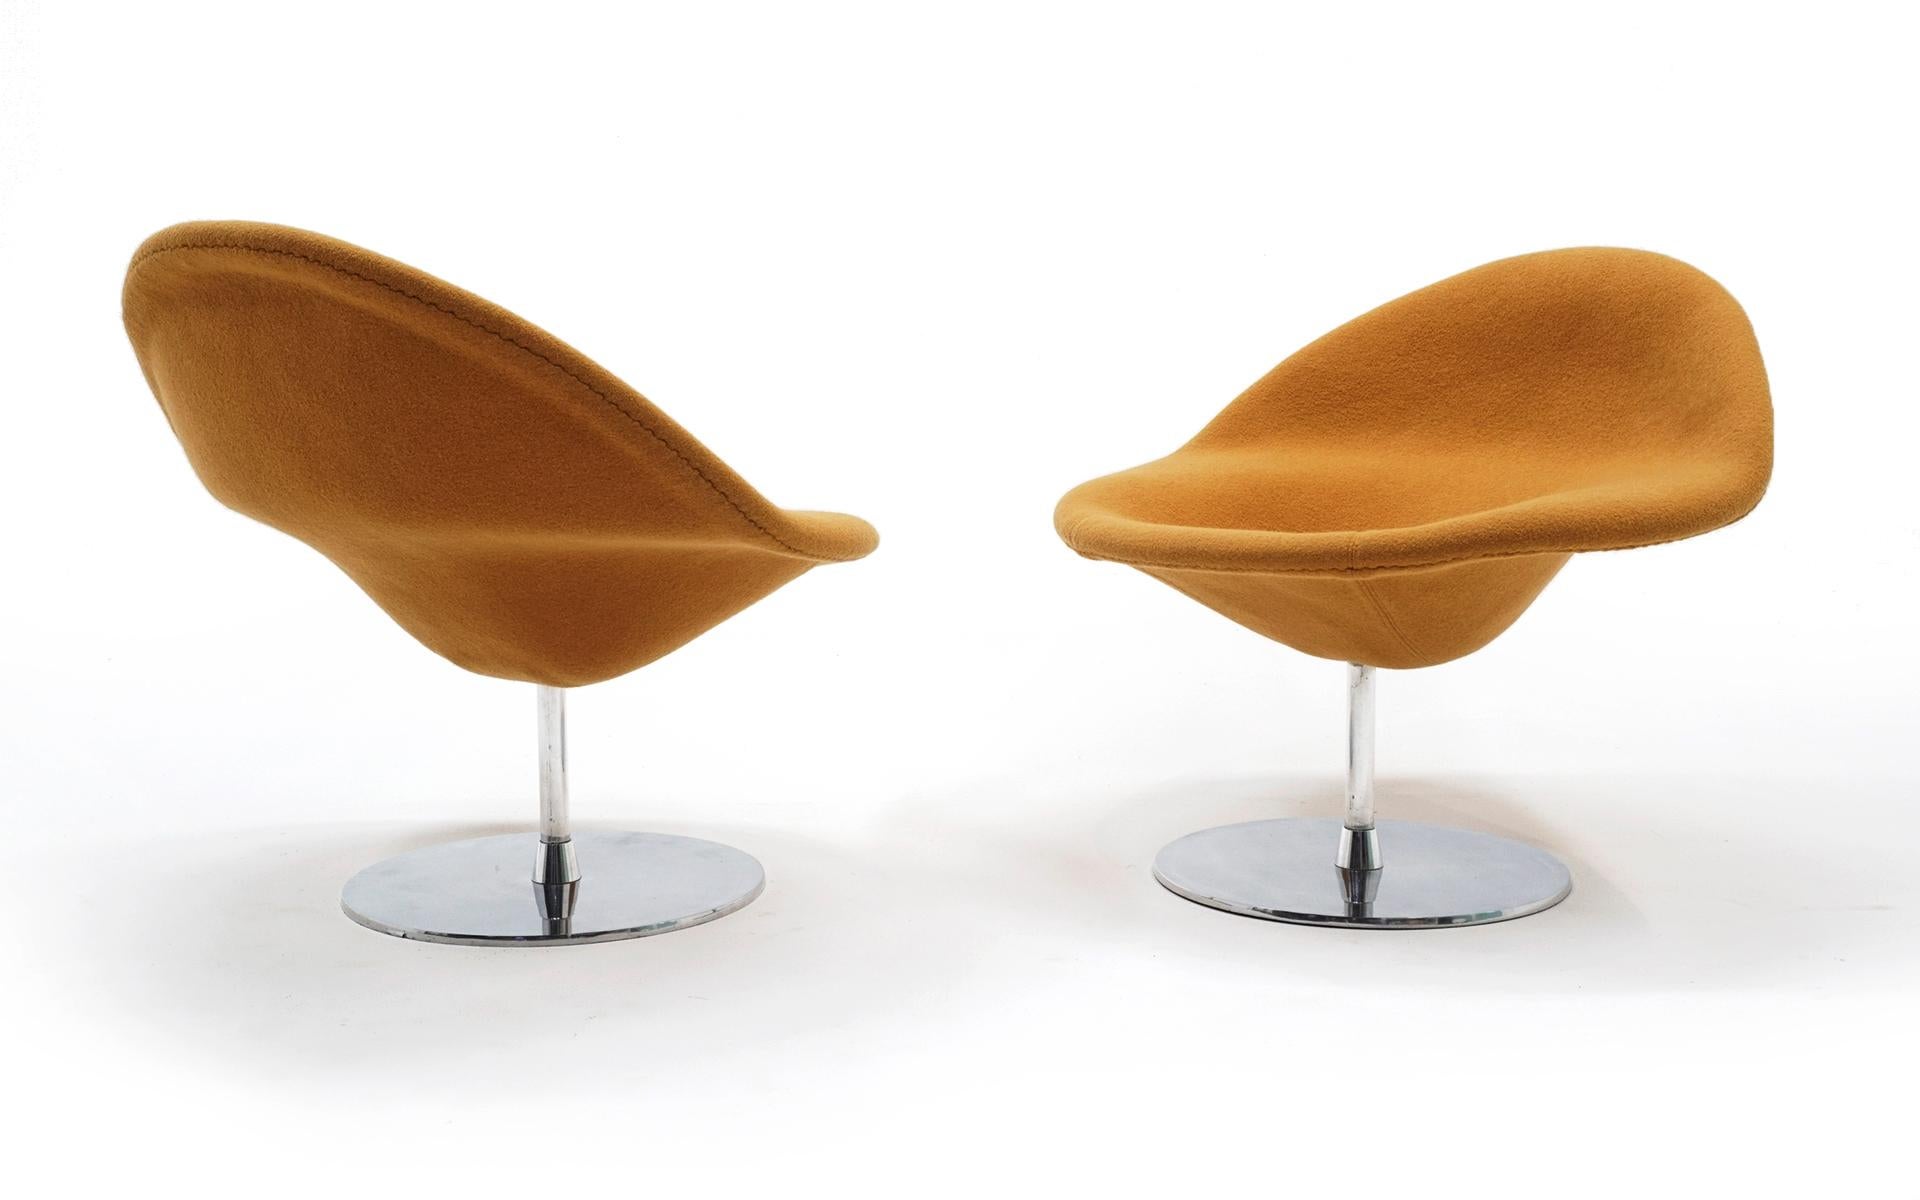 Ein Paar Pierre Paulin Sessel Modell 421, hergestellt von Artifort, um 1970. Beide Stühle sind in sehr gutem Zustand und sofort einsatzbereit. Der Drehmechanismus funktioniert perfekt. Seltene und schöne Beispiele für dieses Design.